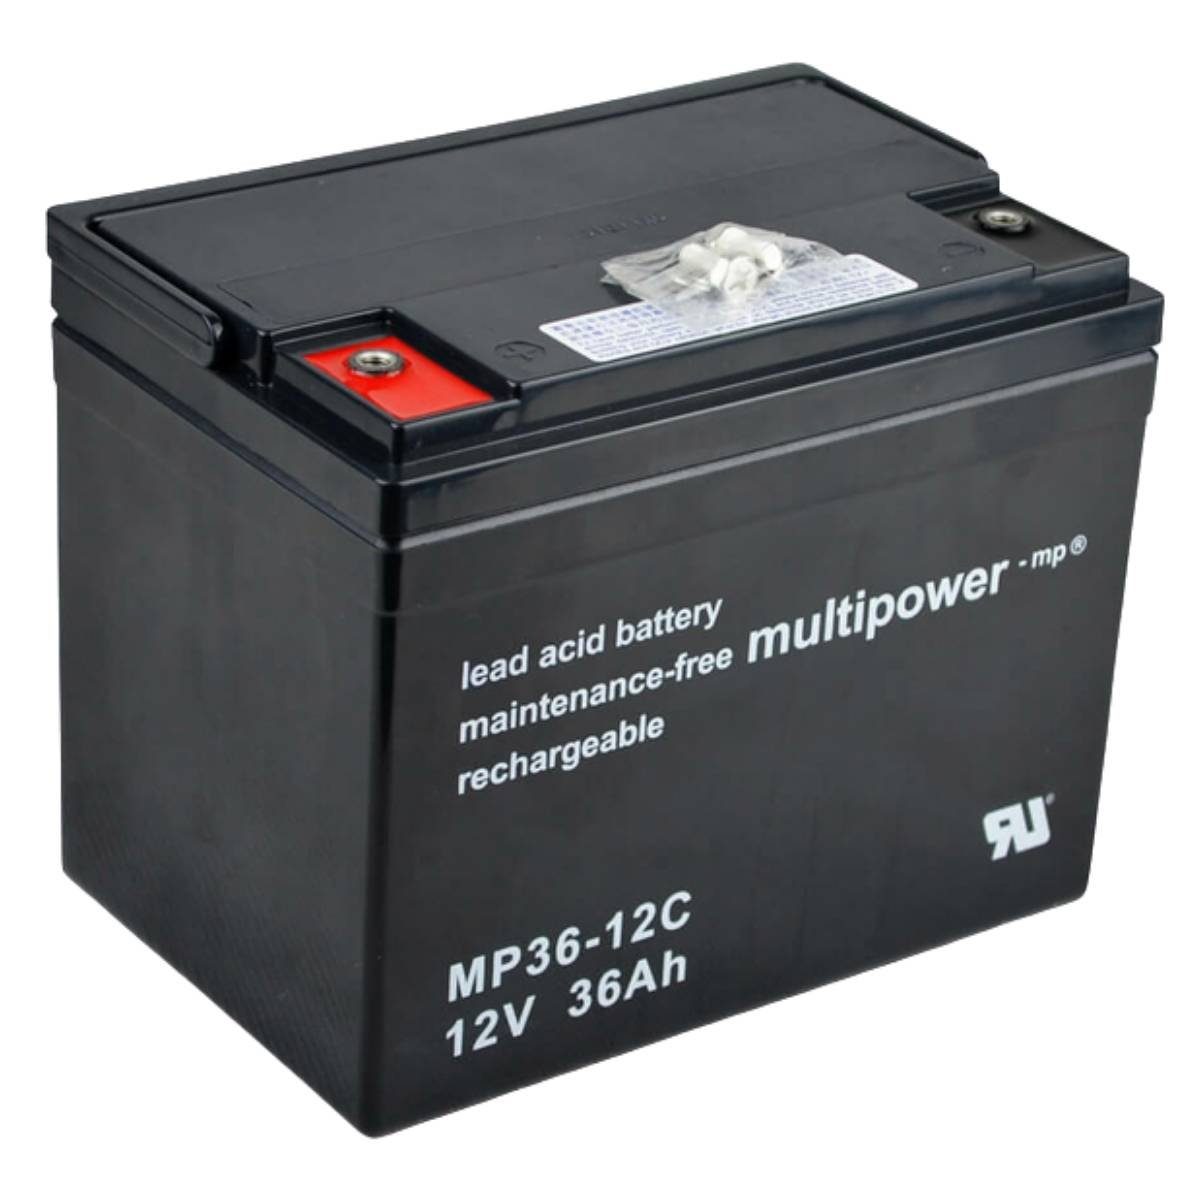 Multipower MP36-12C AGM Batterie 12V 36Ah für Rollstuhl, Elektromobil und Scooter Batterie, (12 V)